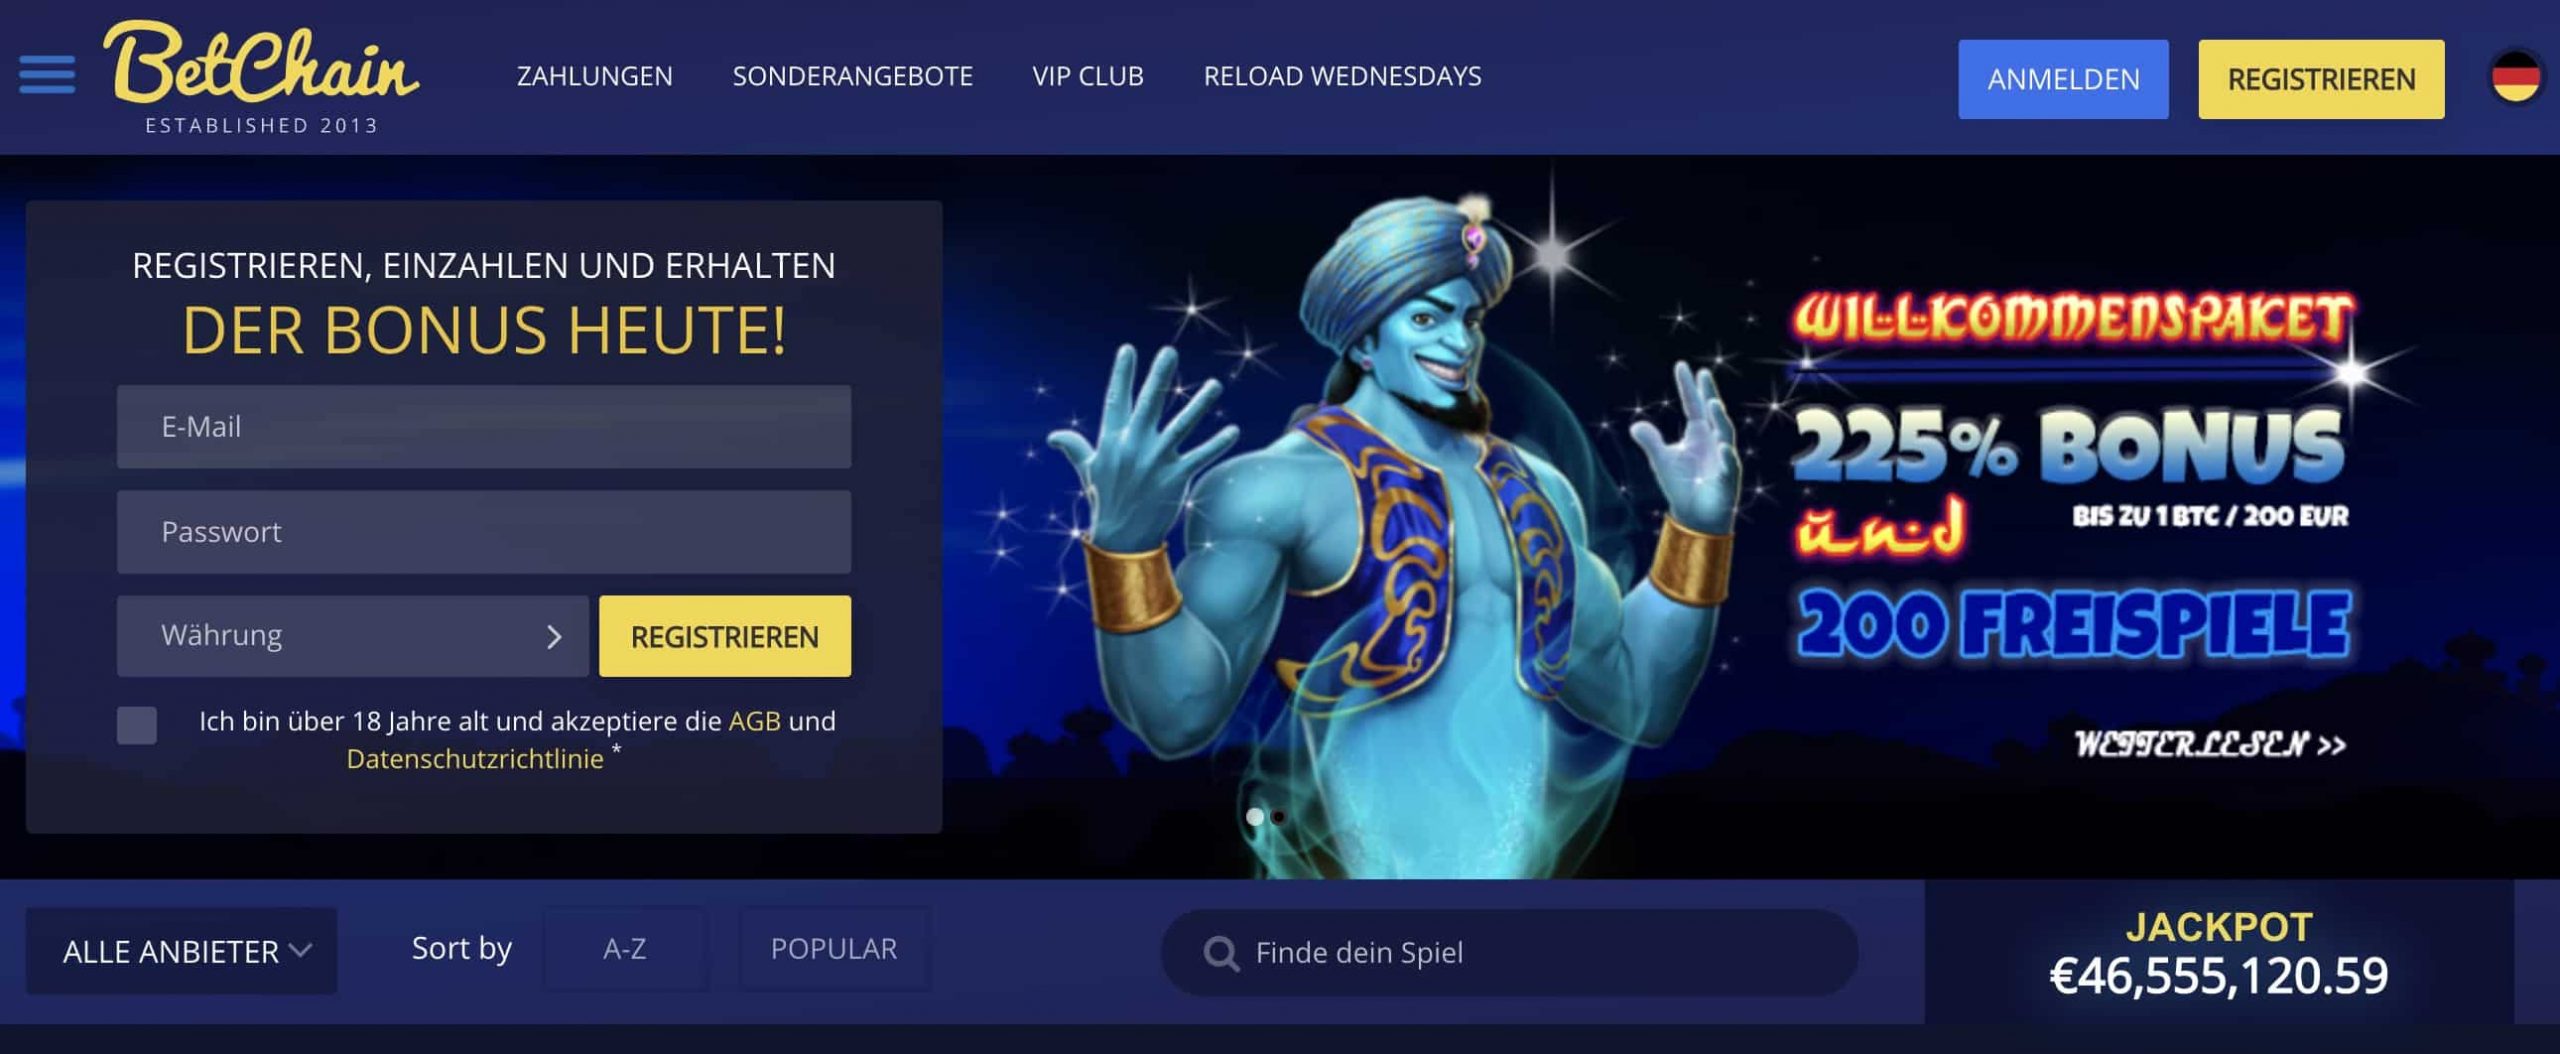 BetChain Casino Homepage